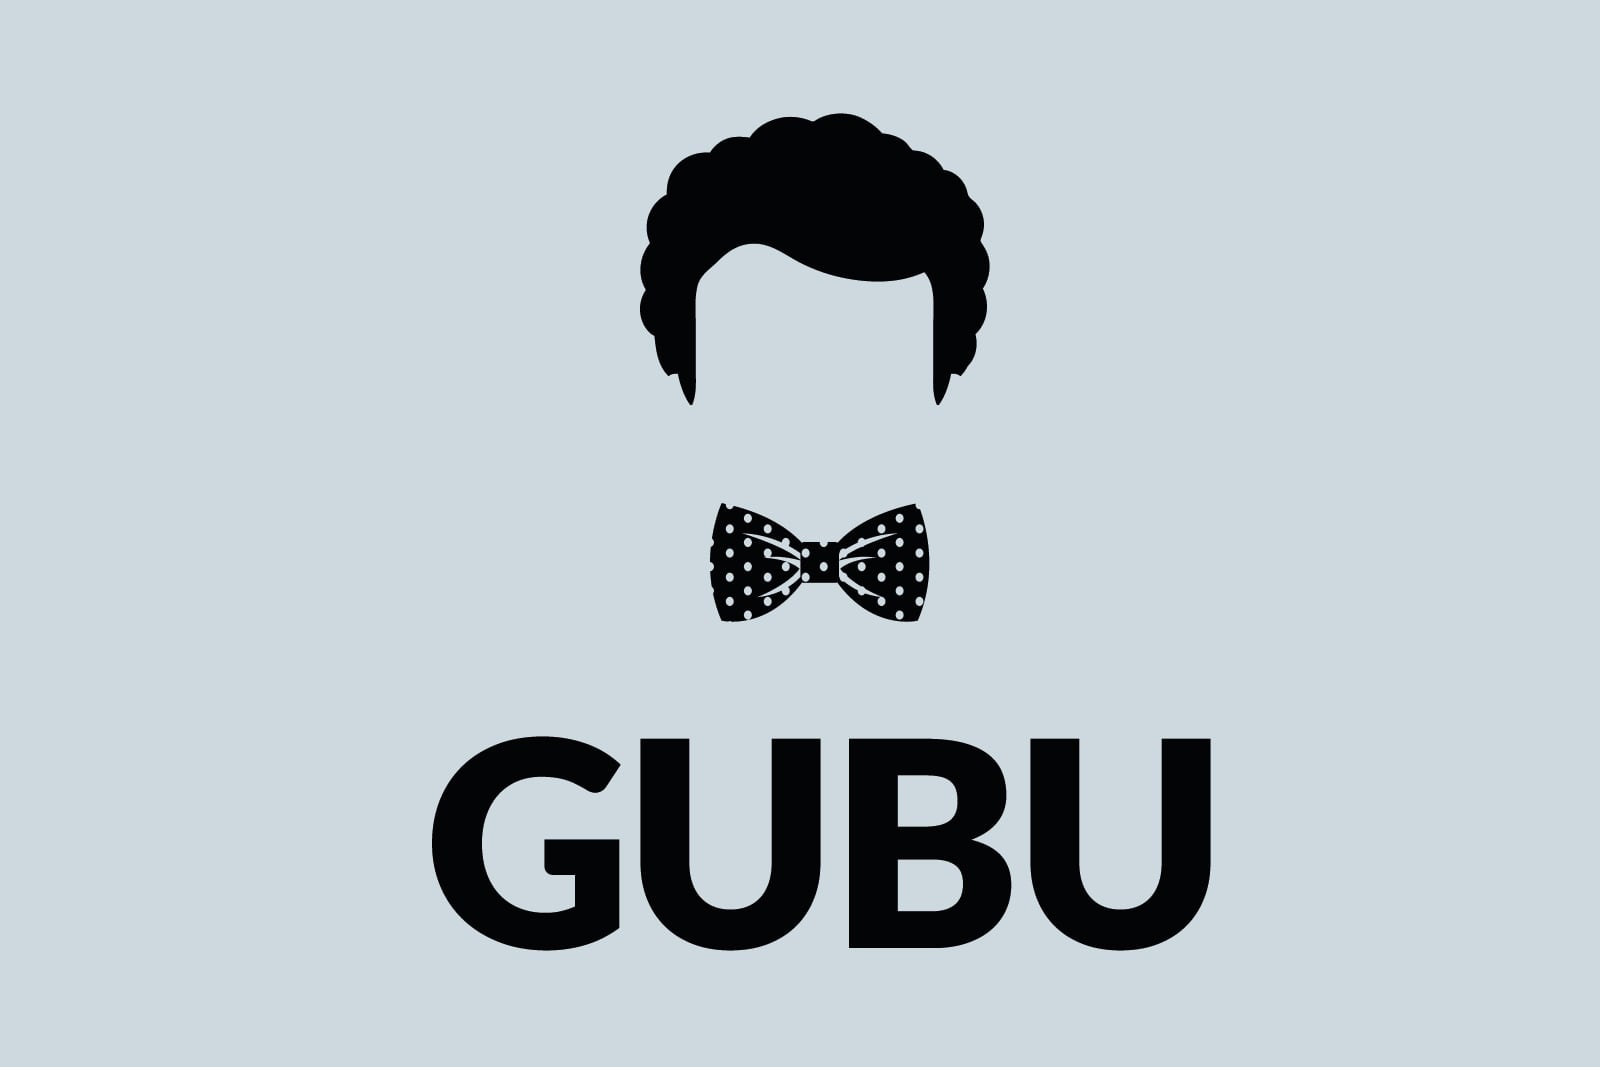 gubu logo 4